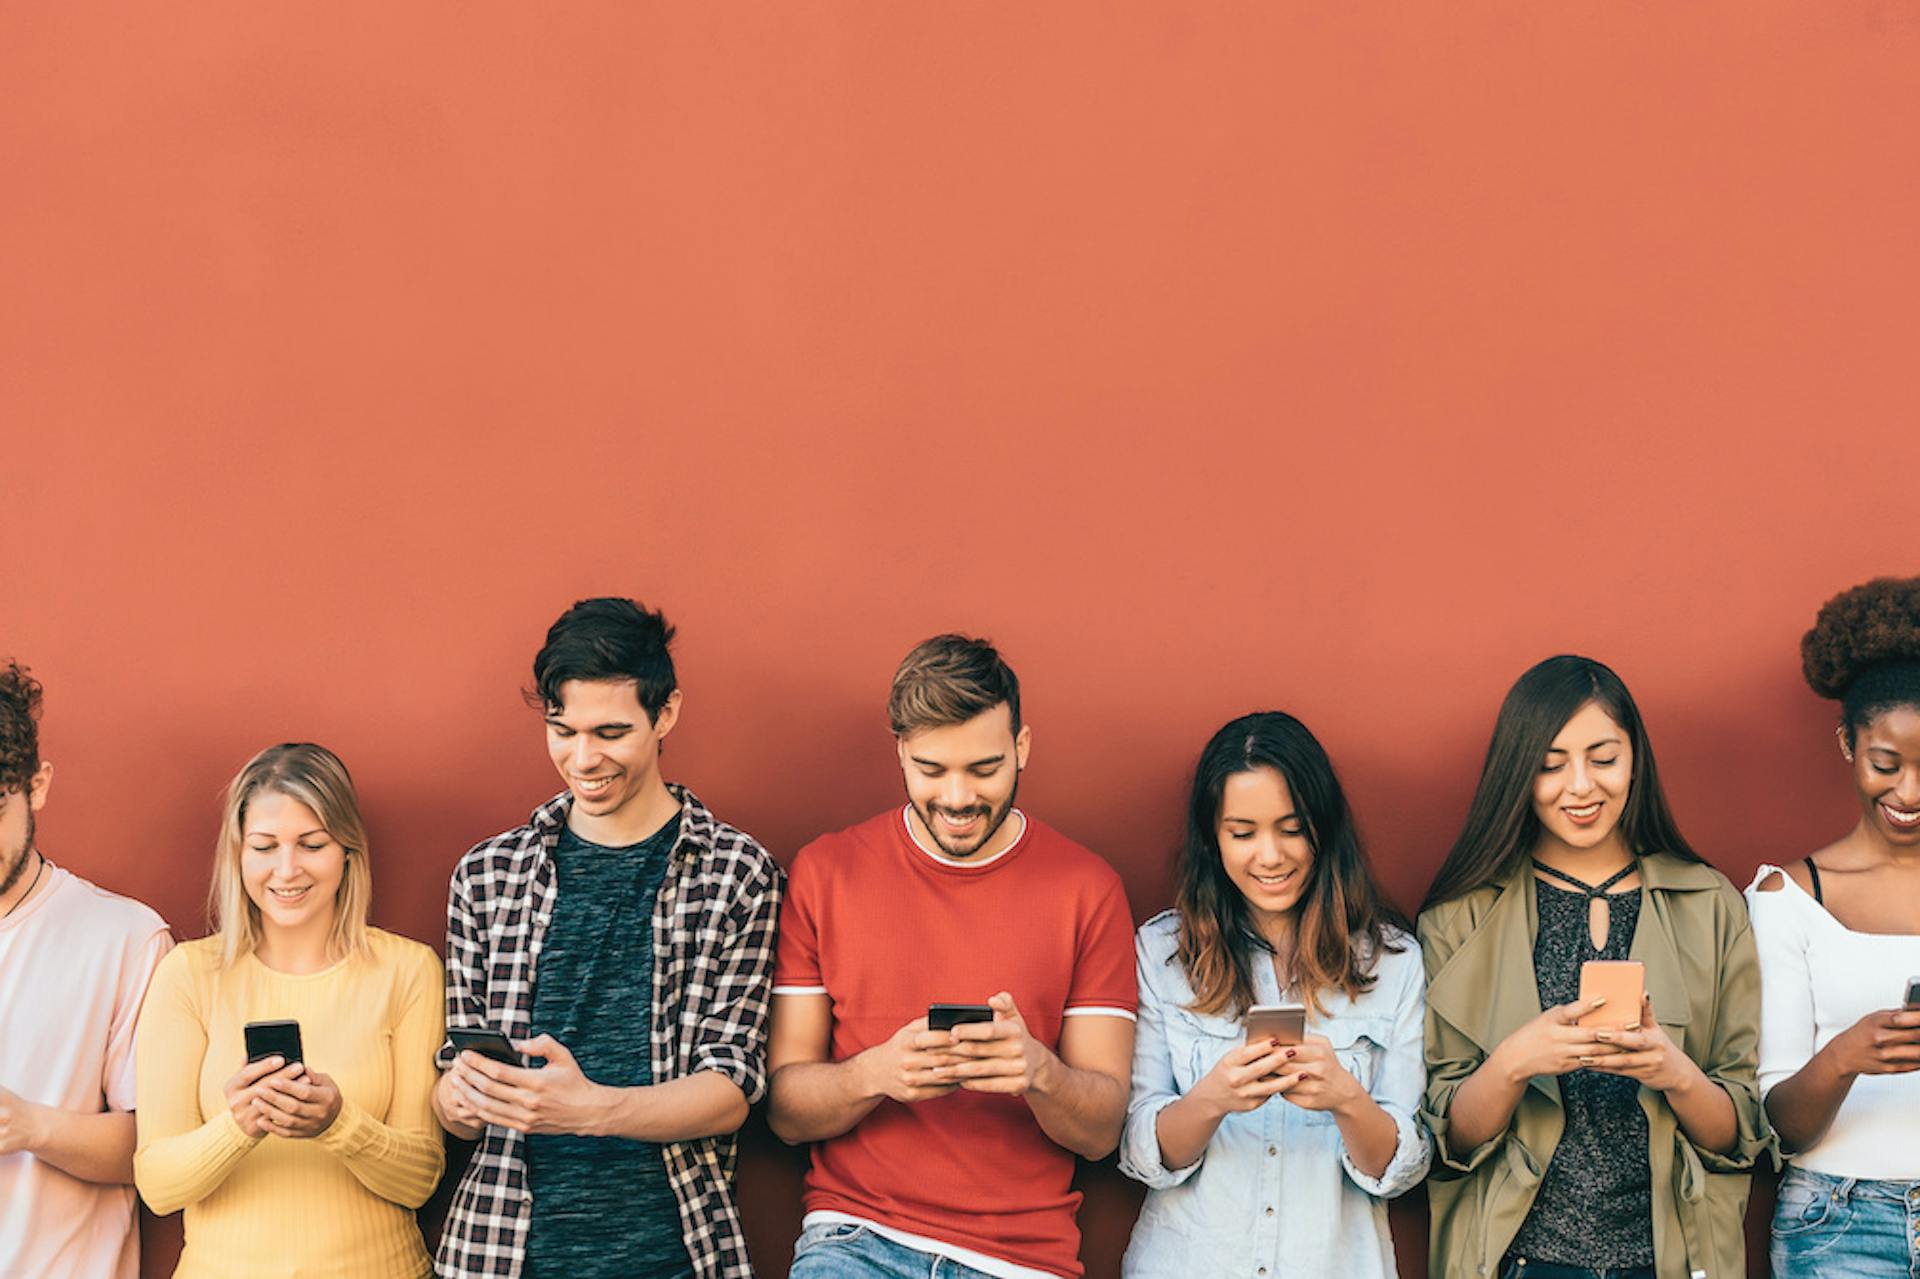 Junge Leute schauen fröhlich auf ihr Handy während sie an einer orangen Wand lehnen